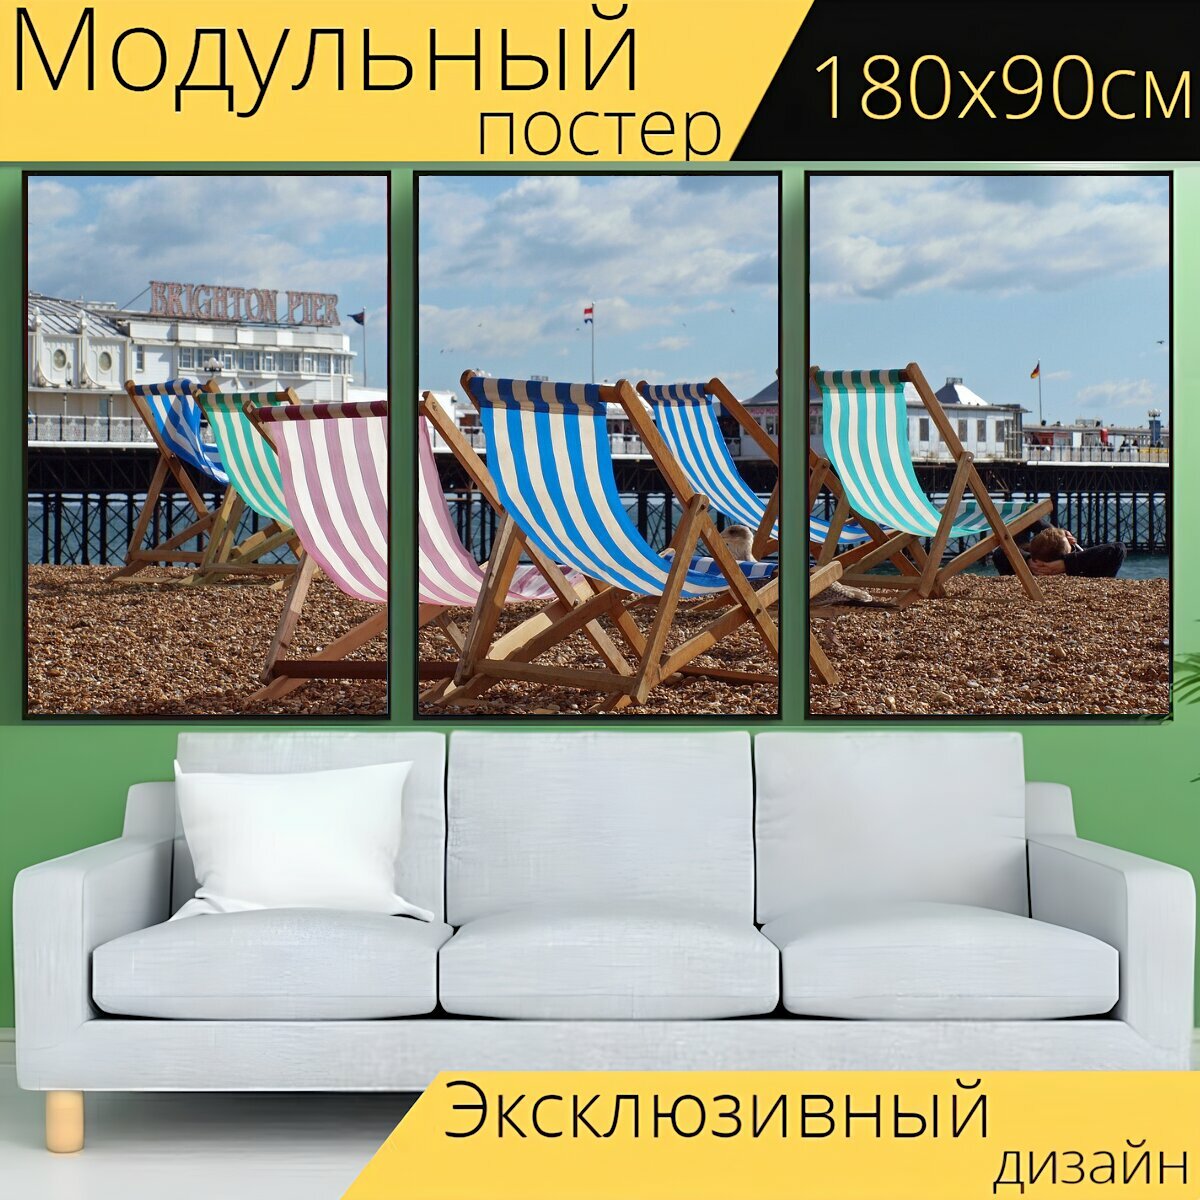 Модульный постер "Шезлонги, пляж, шезлонг" 180 x 90 см. для интерьера